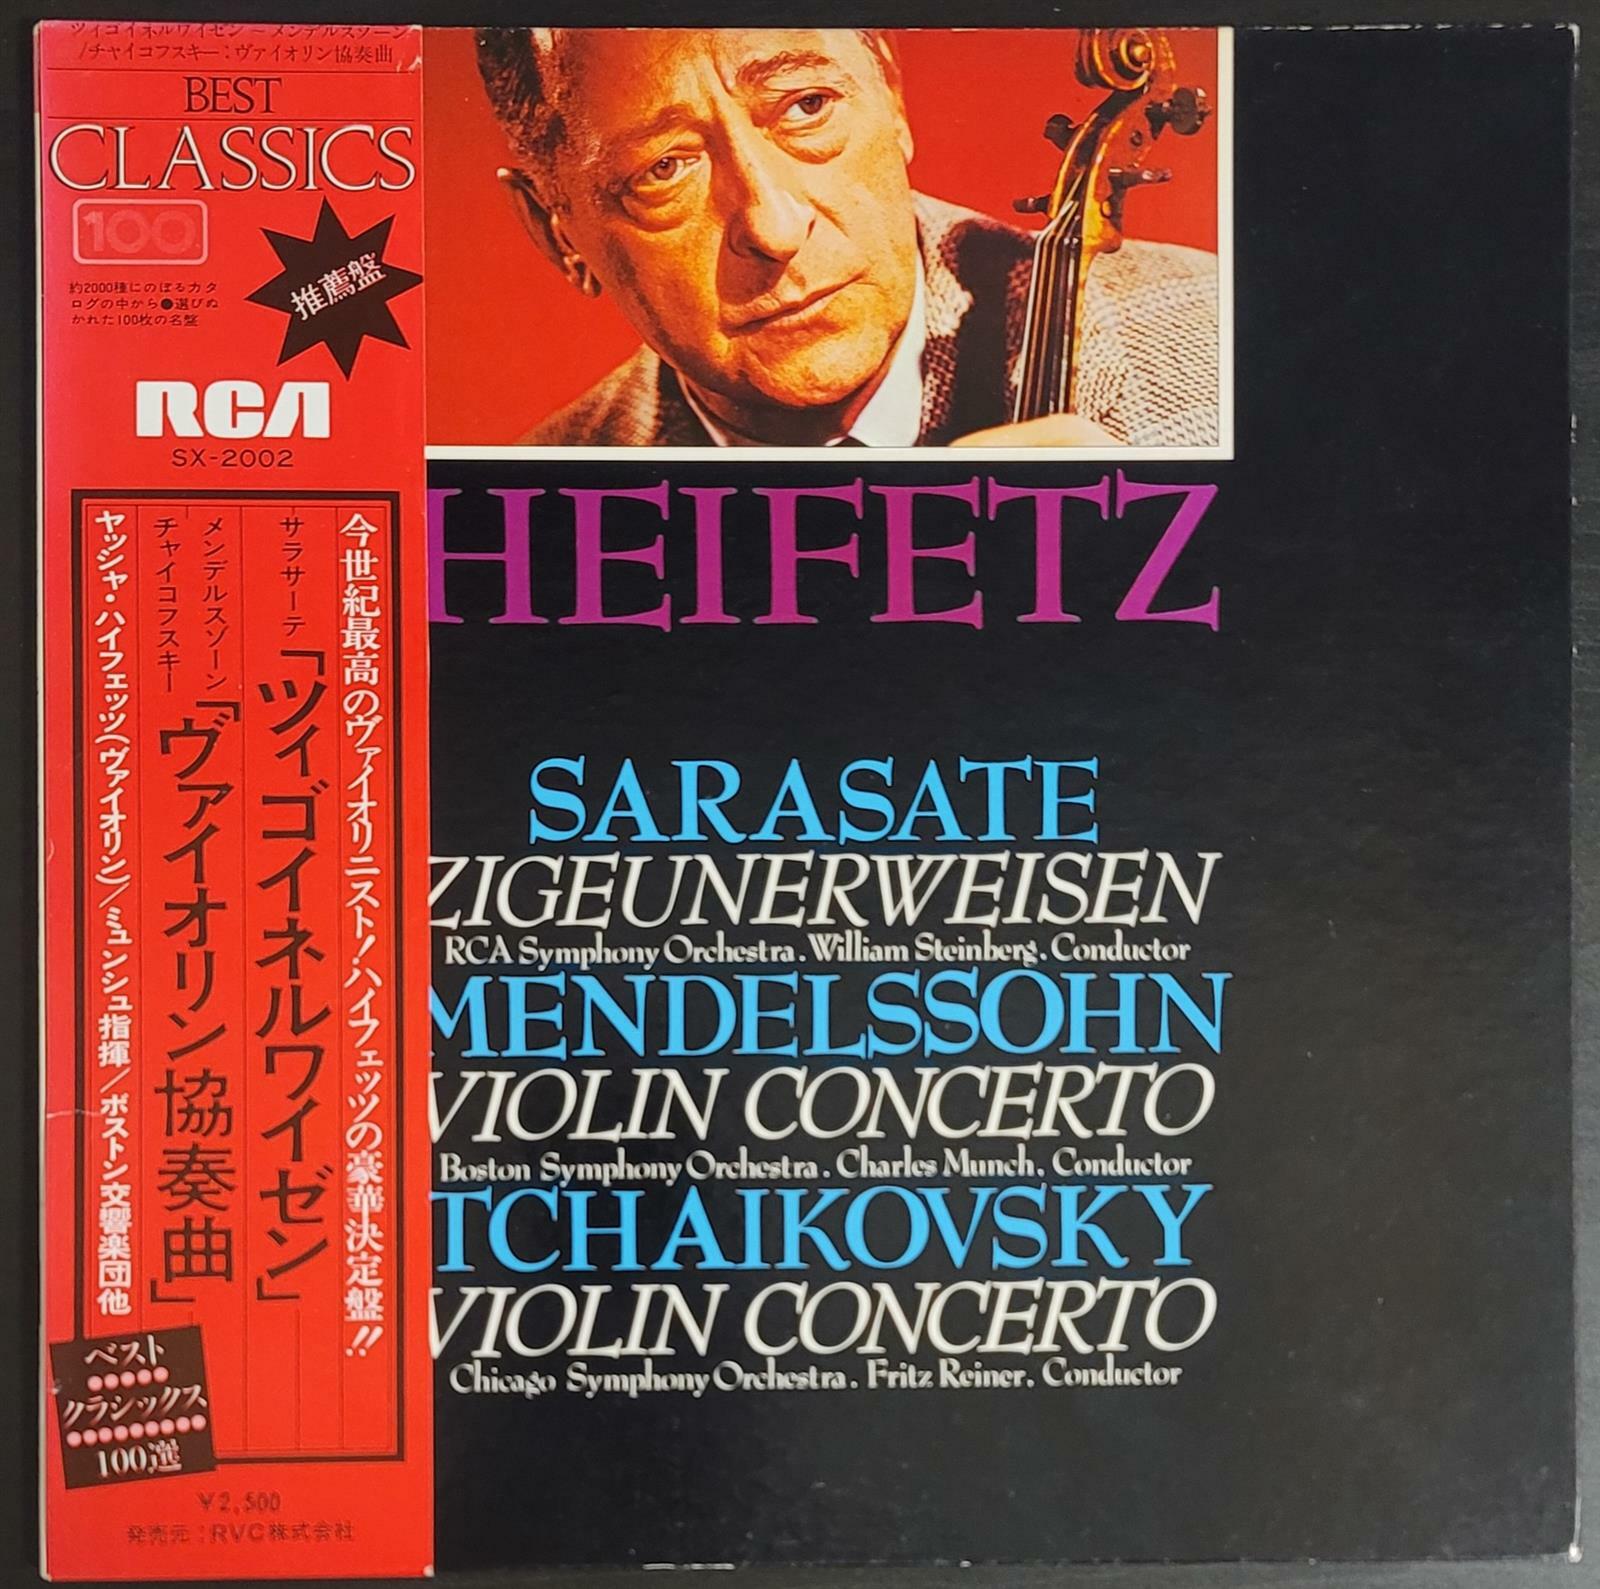 [중고] [LP] 67년 Heifetz Zigeunerweisen Mendelssohn Tchaikovsky 하이페츠 찌고이네르바이젠 멘델스존 차이콥스키 [일본반] 게이트폴드 1967년